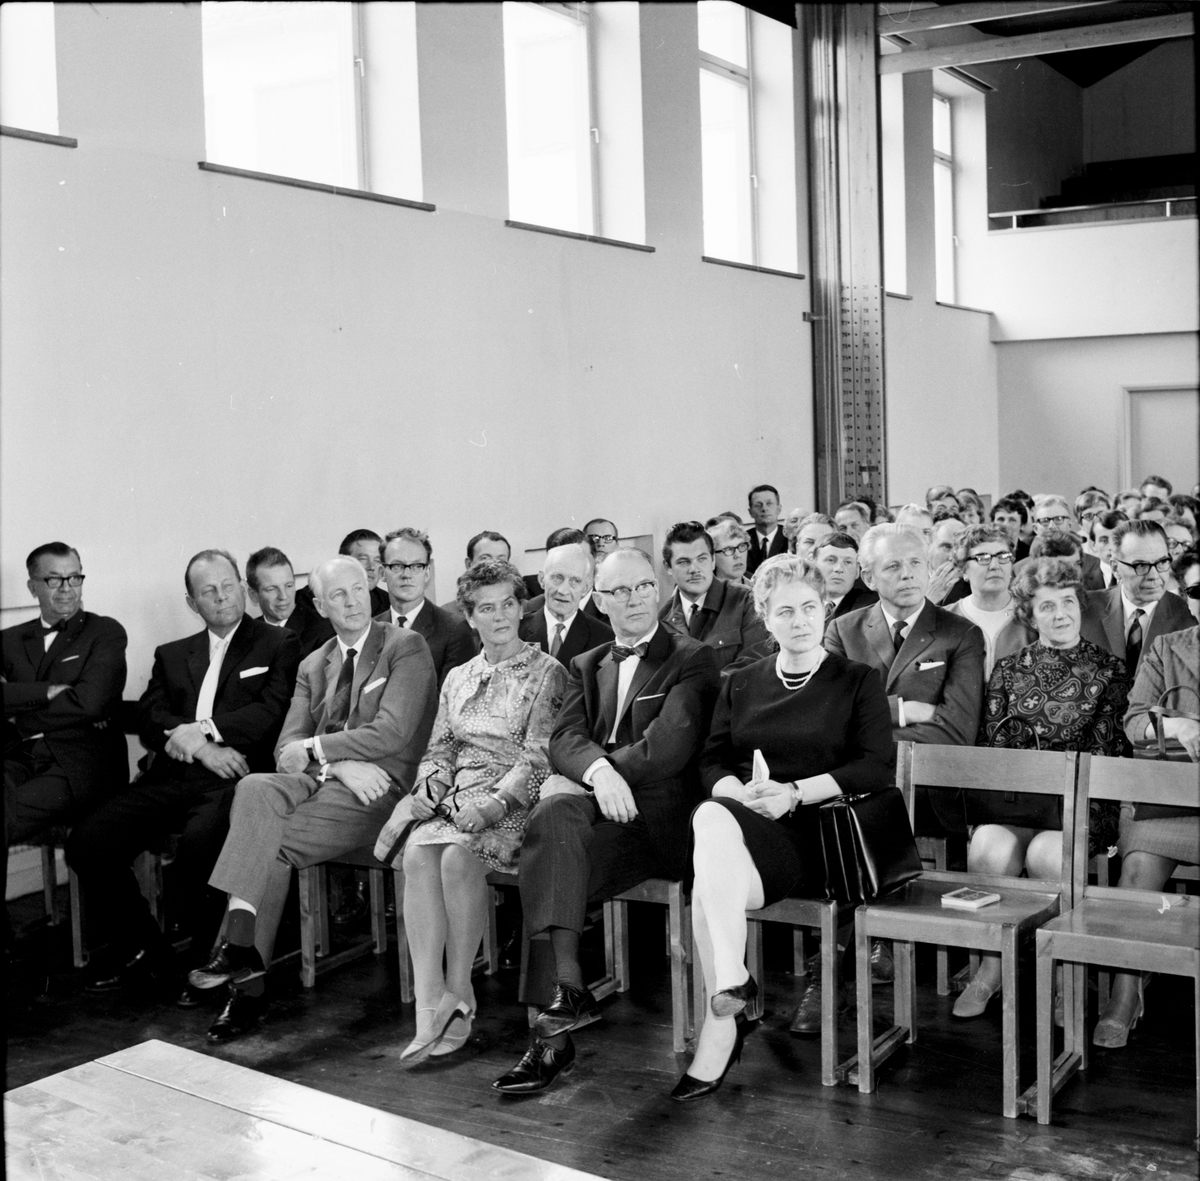 Nytorp,
Rektor Örn slutar,
11 Maj 1968